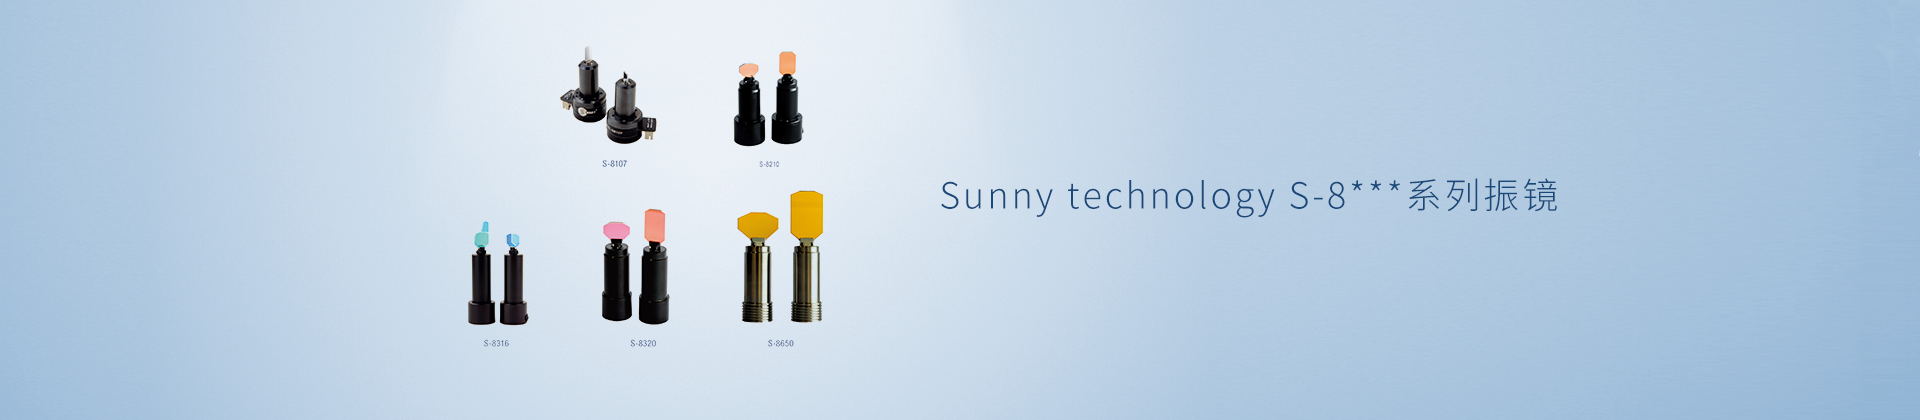 Sunny technology S-8系列振镜